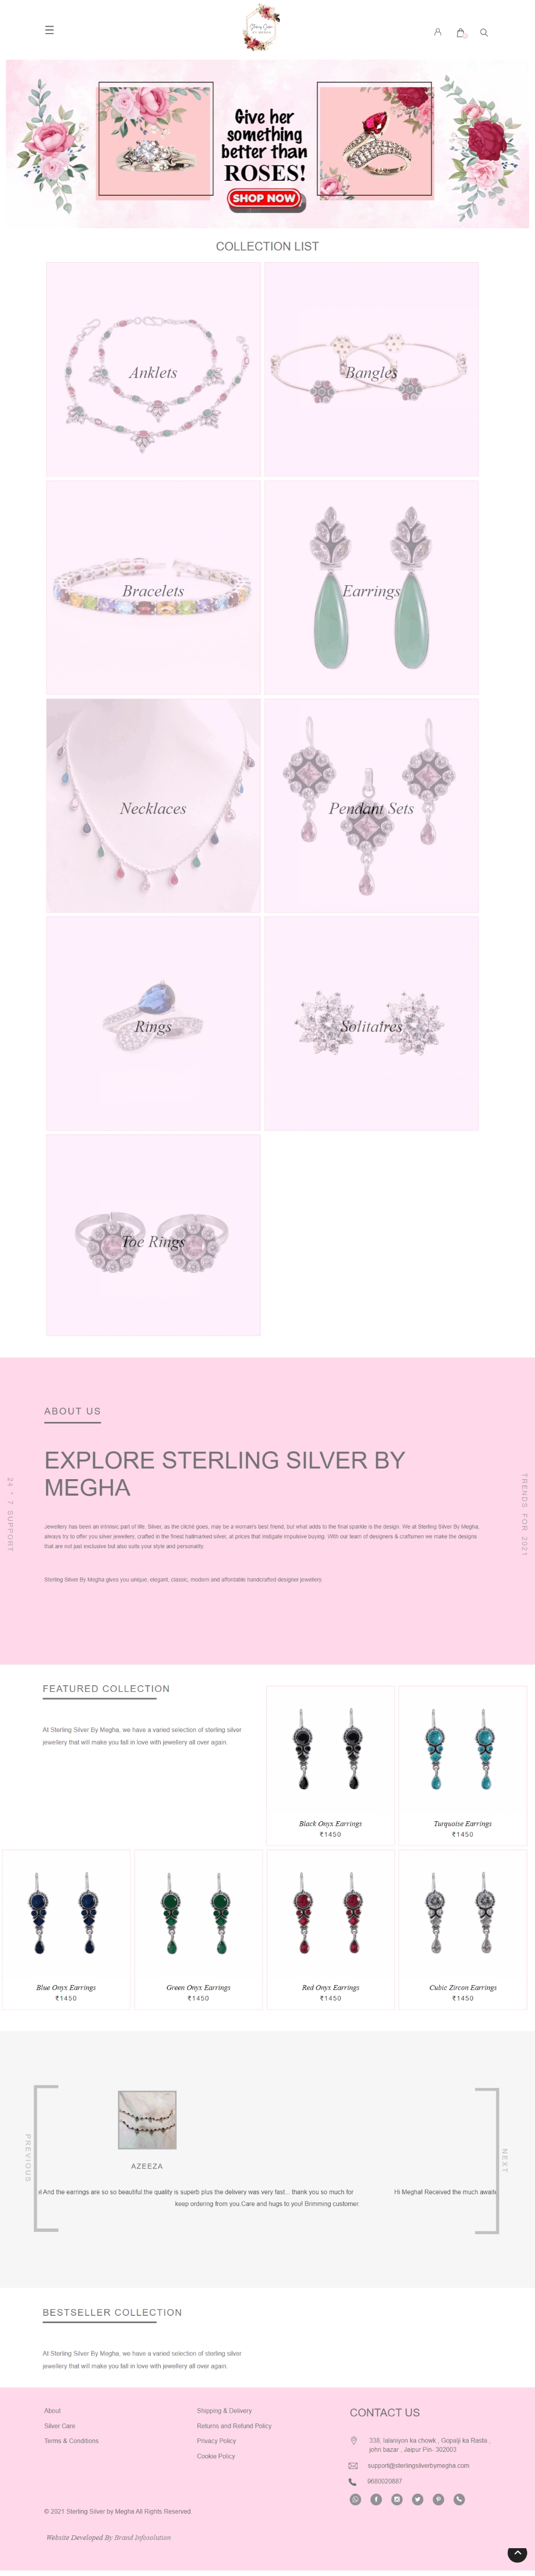 Sterling Silver By Megha